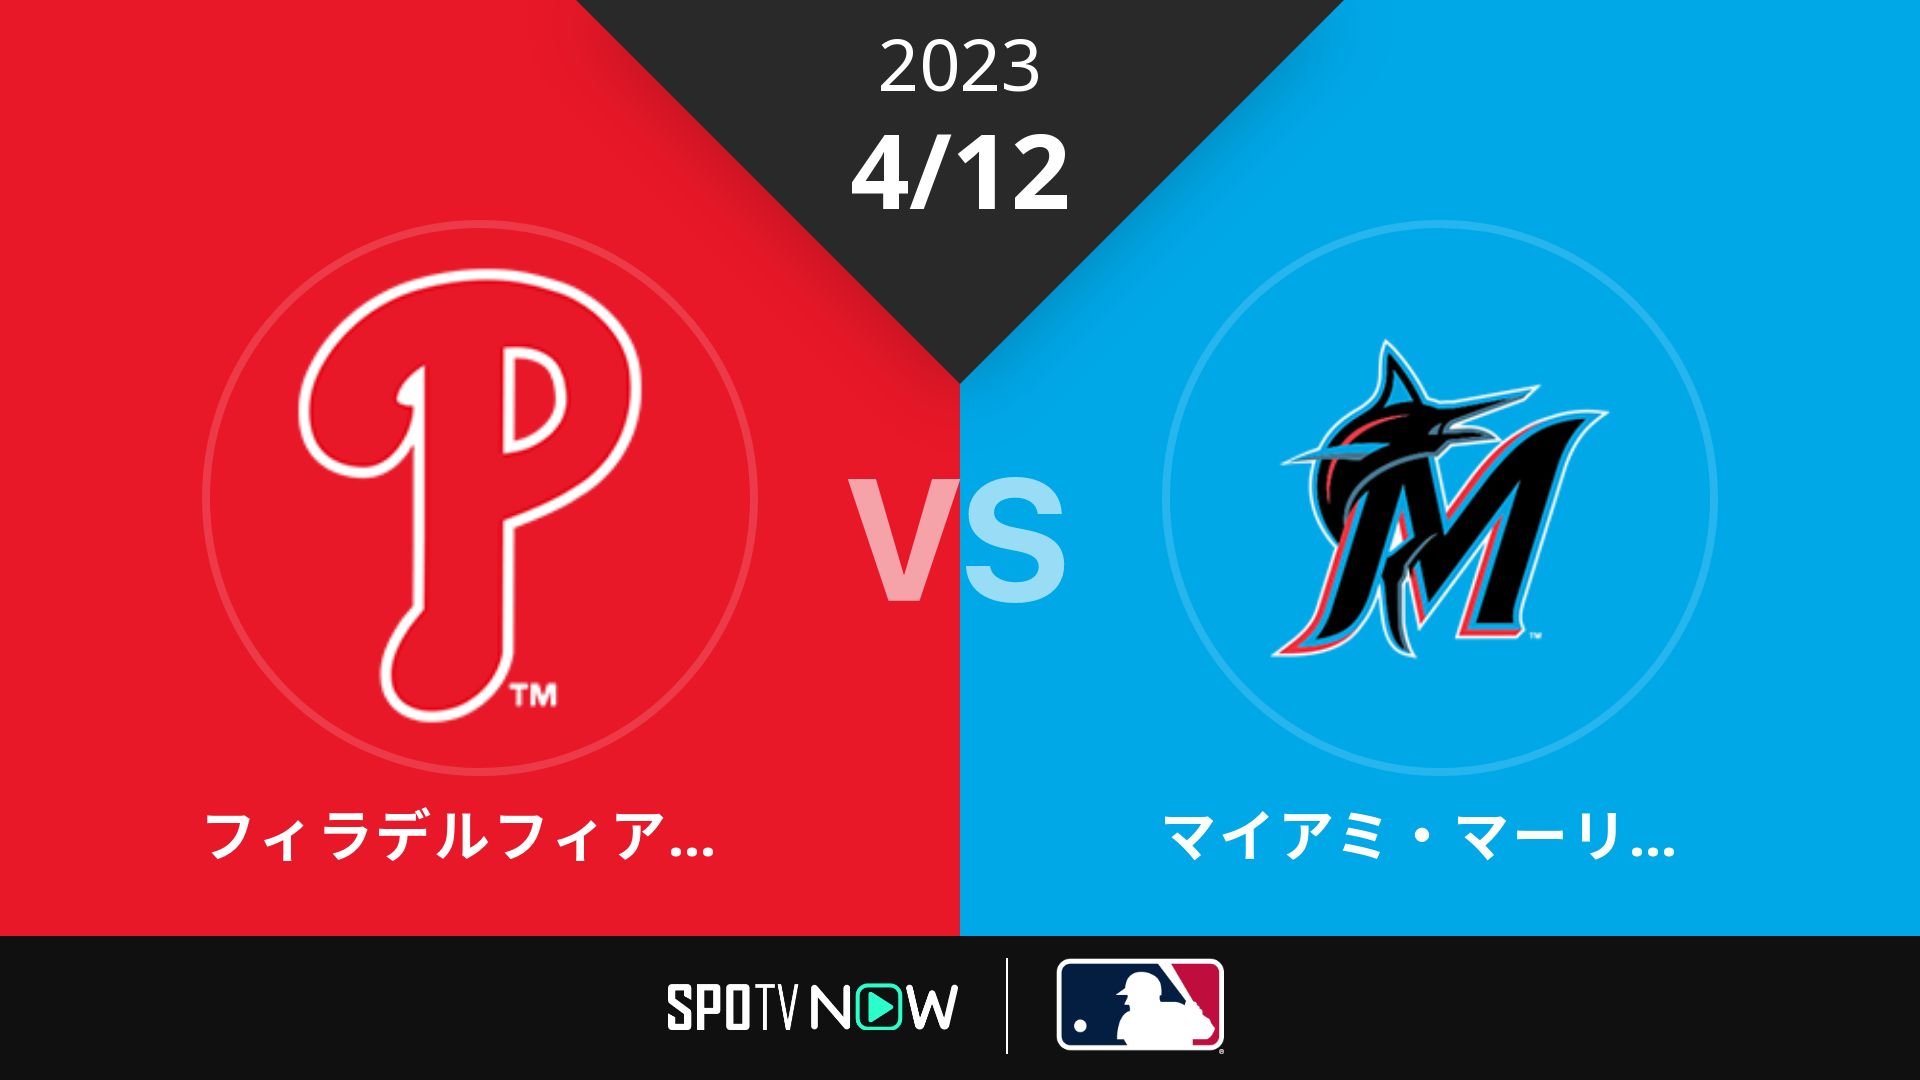 2023/4/12 フィリーズ vs マーリンズ [MLB]